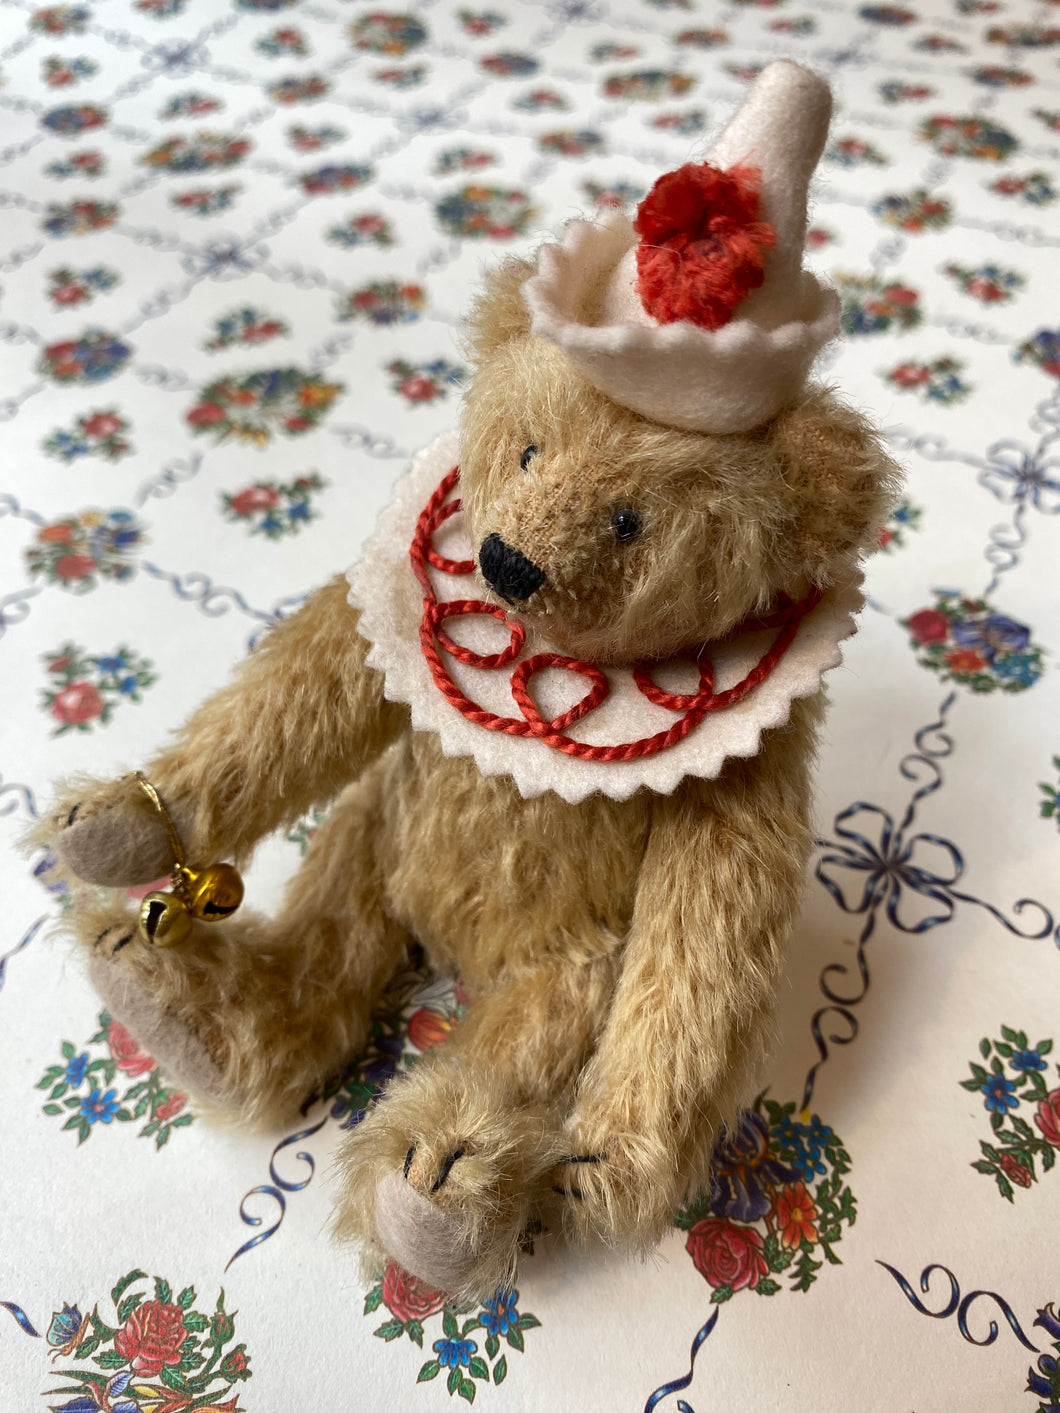 Handmade teddy bear / ハンドメイド テディベア / Petit ours fait main